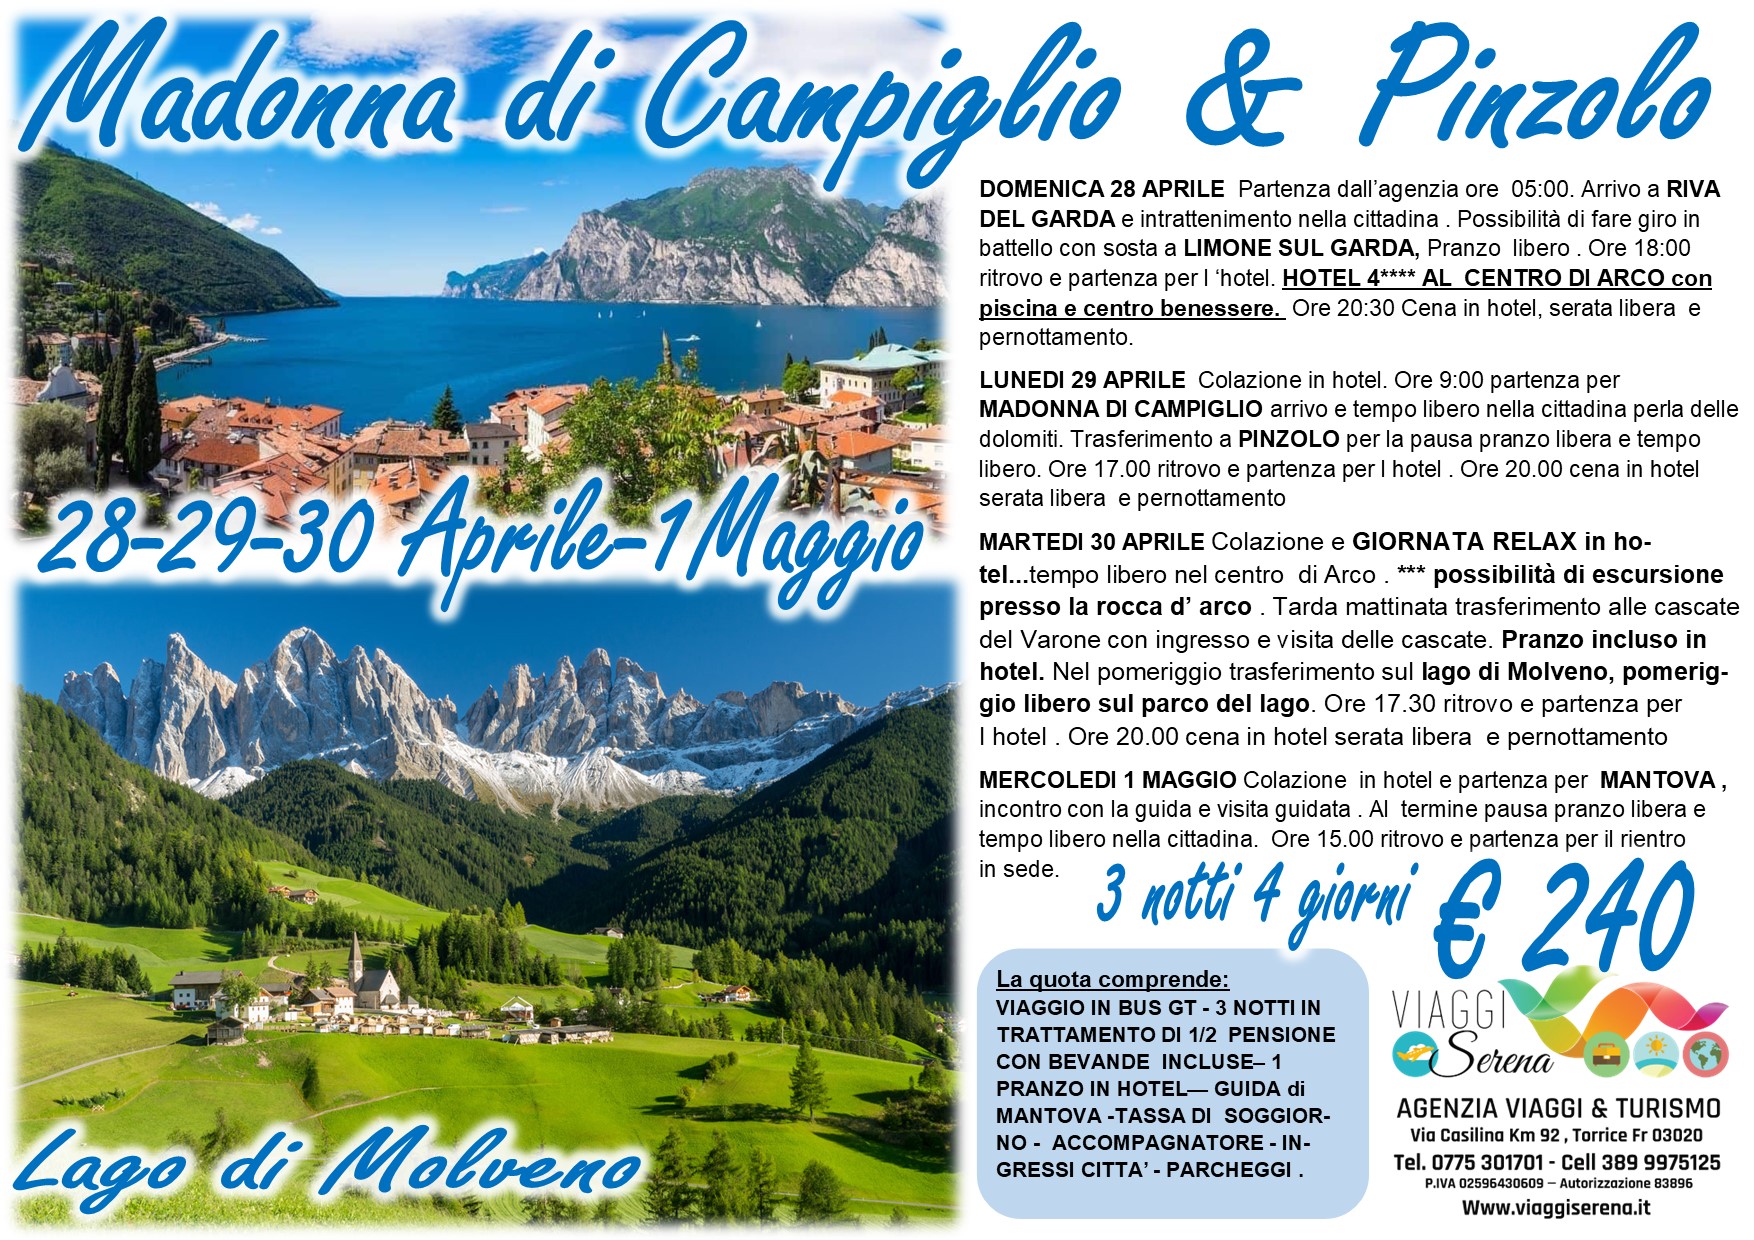 Viaggi di gruppo: Madonna di Campiglio, Arco, Pinzolo, Mantova & Lago di Molveno 29-30 Aprile 1 Maggio €240